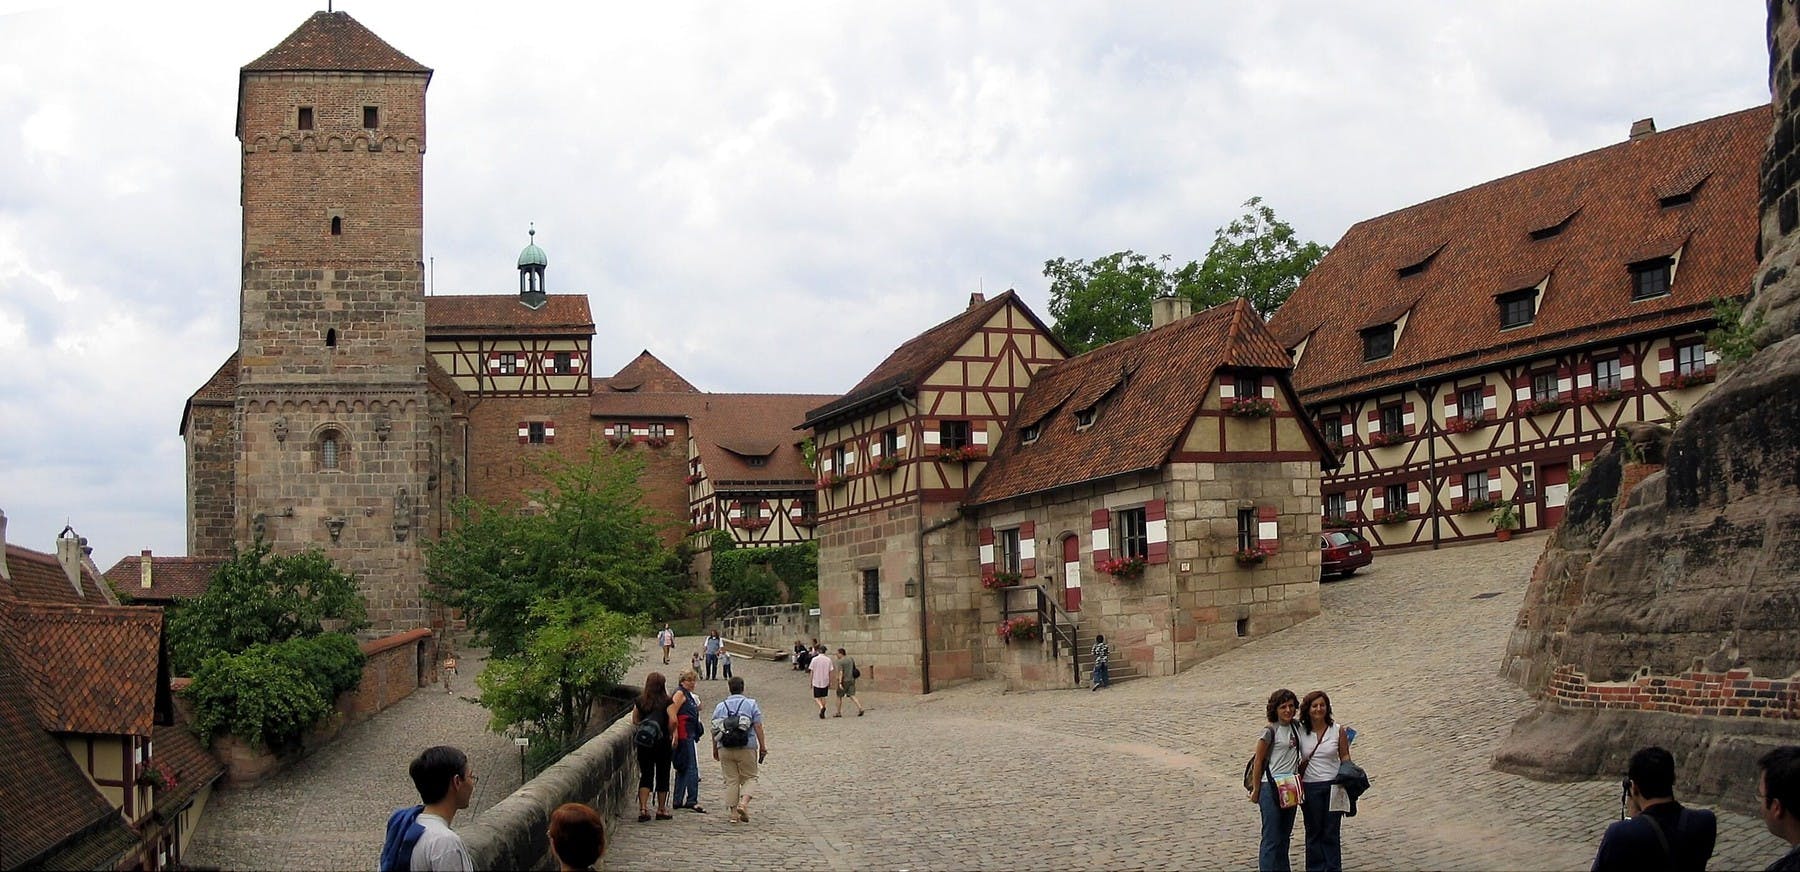 Sightseeings in Nuremberg: The Nuremberg Castle